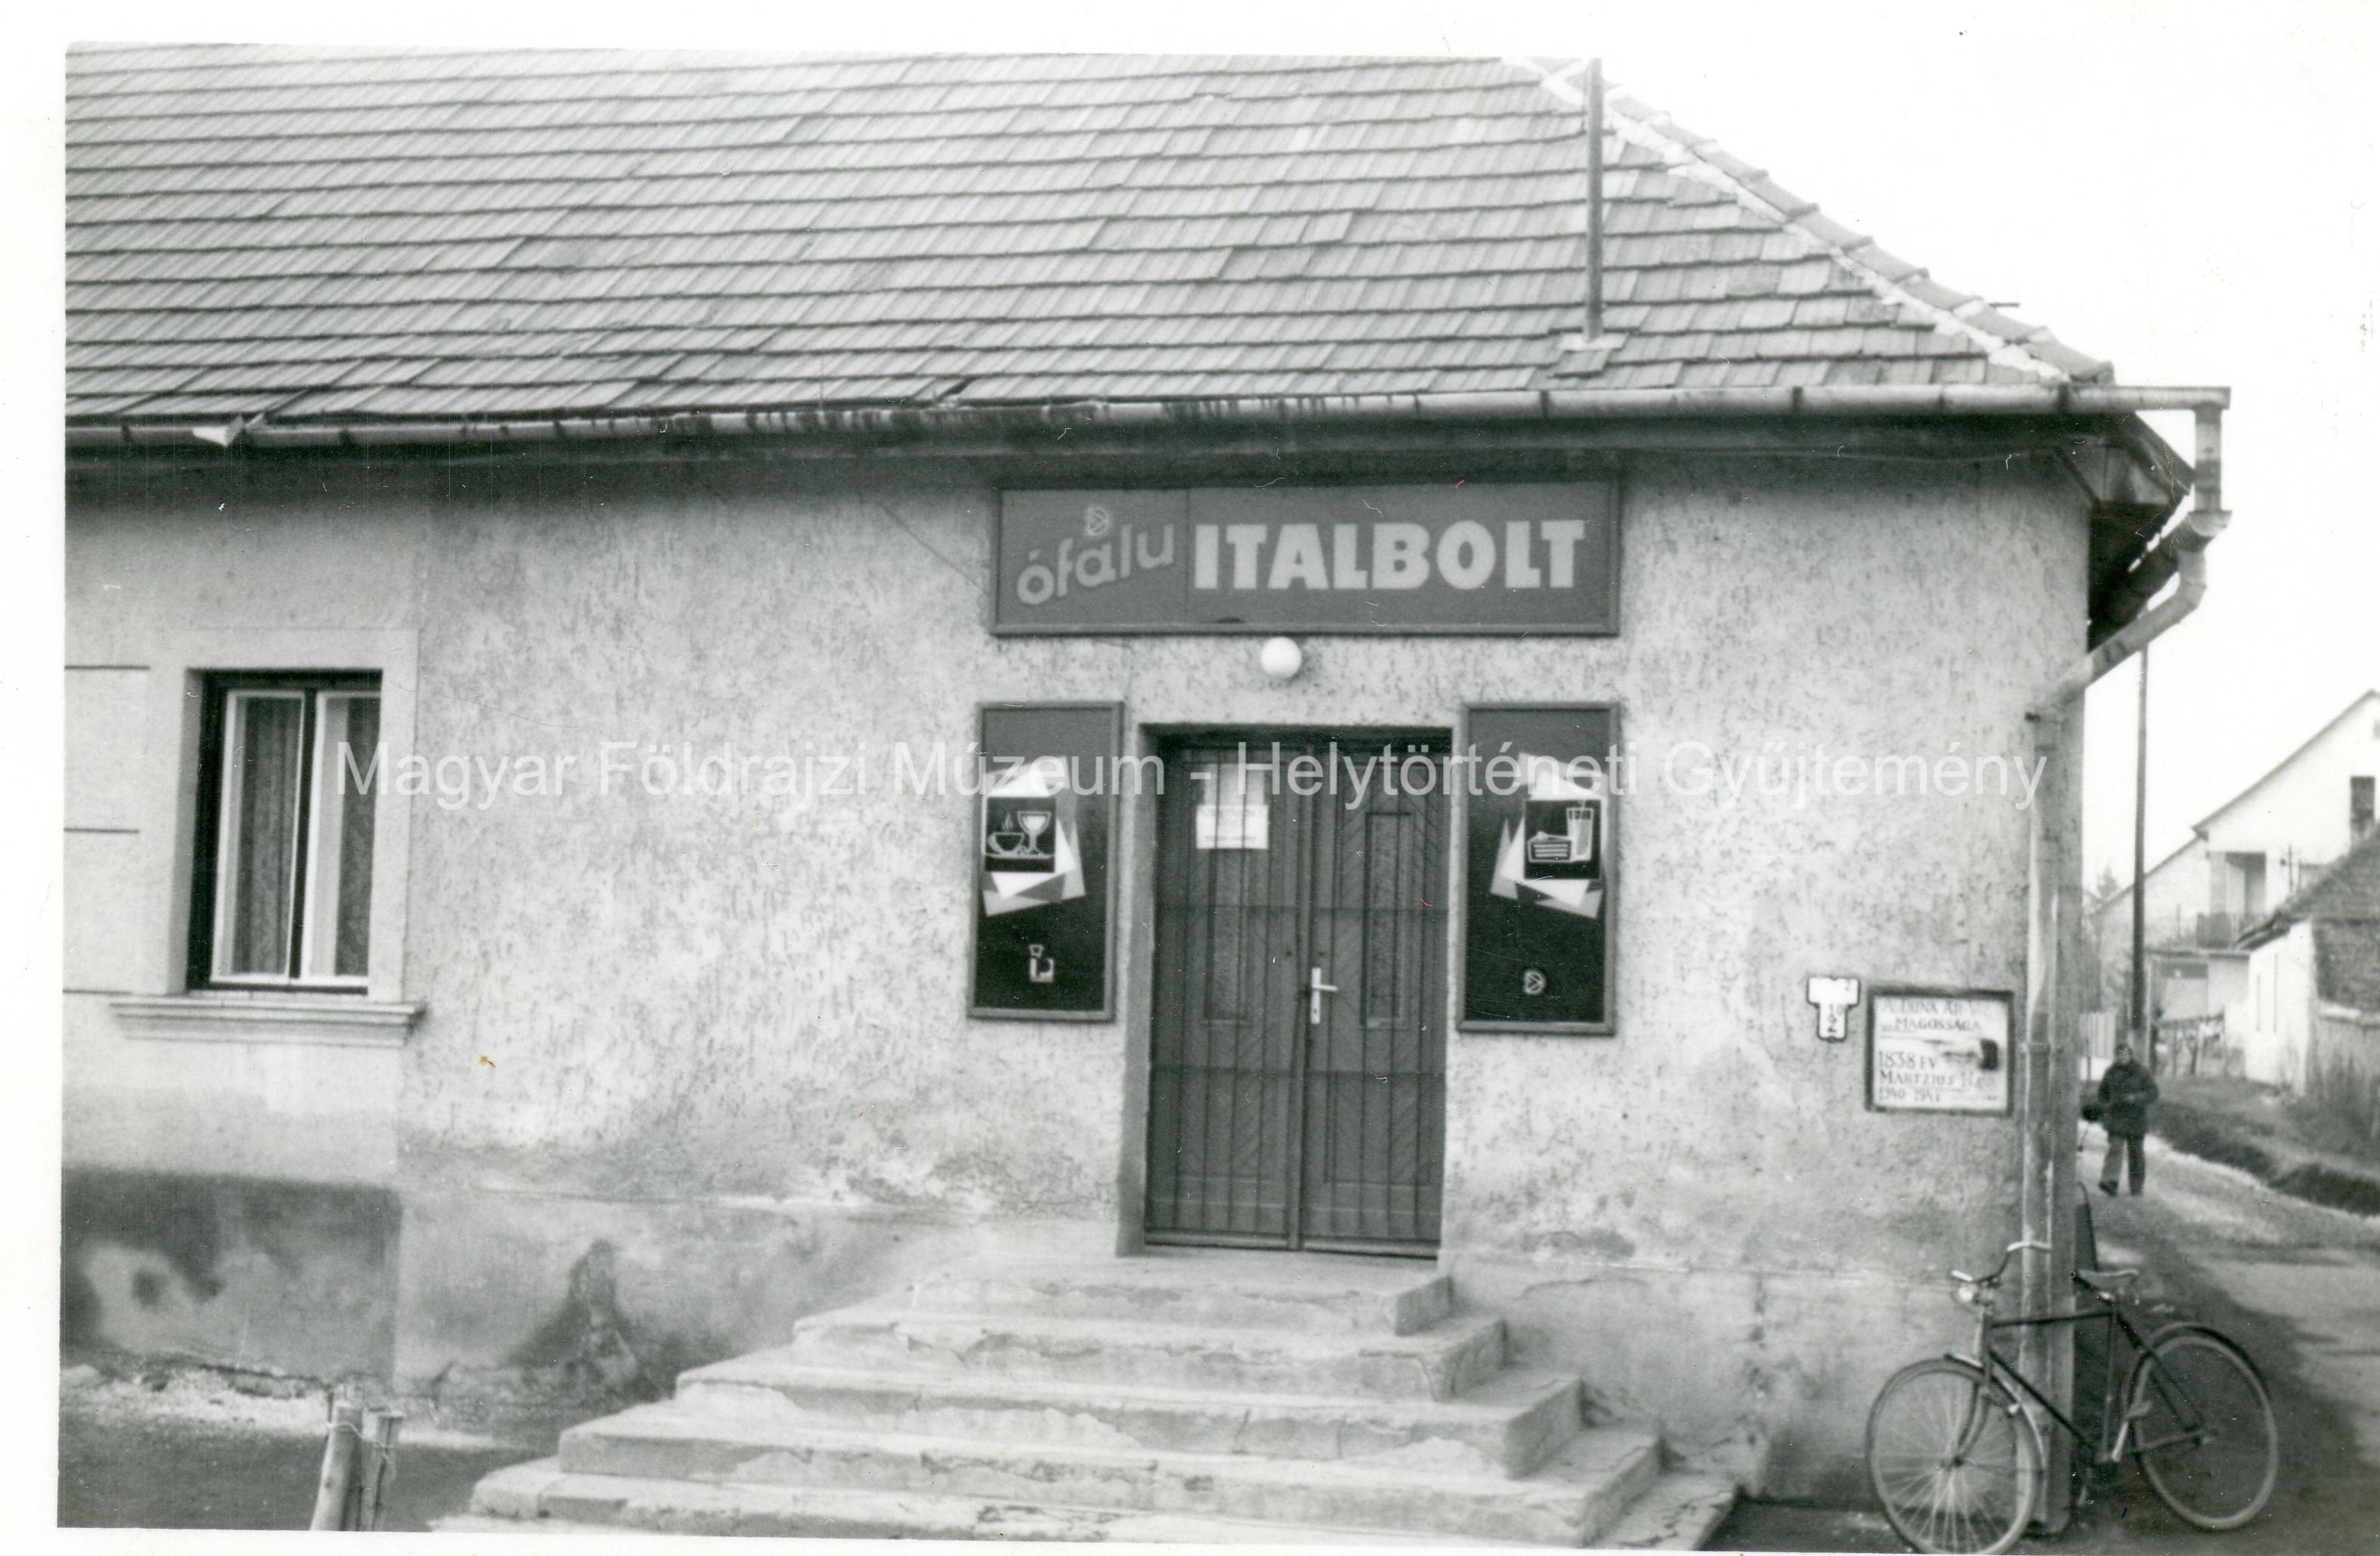 Utcakép - Italbolt (Magyar Földrajzi Múzeum CC BY-NC-SA)